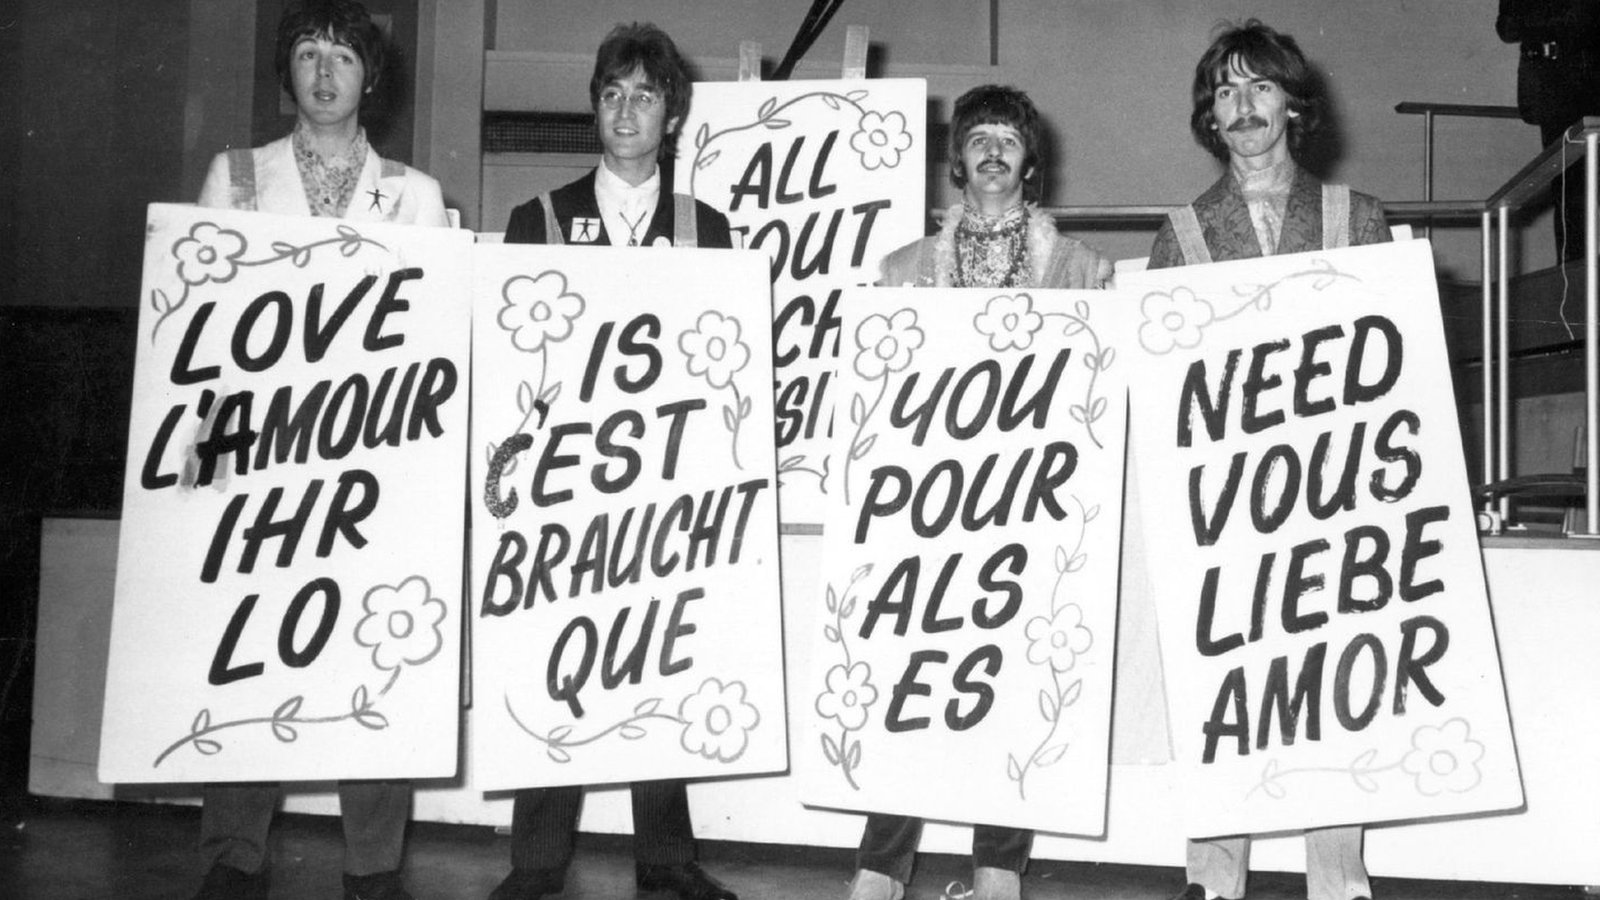 Imagen de The Beatles con carteles en diferentes idiomas